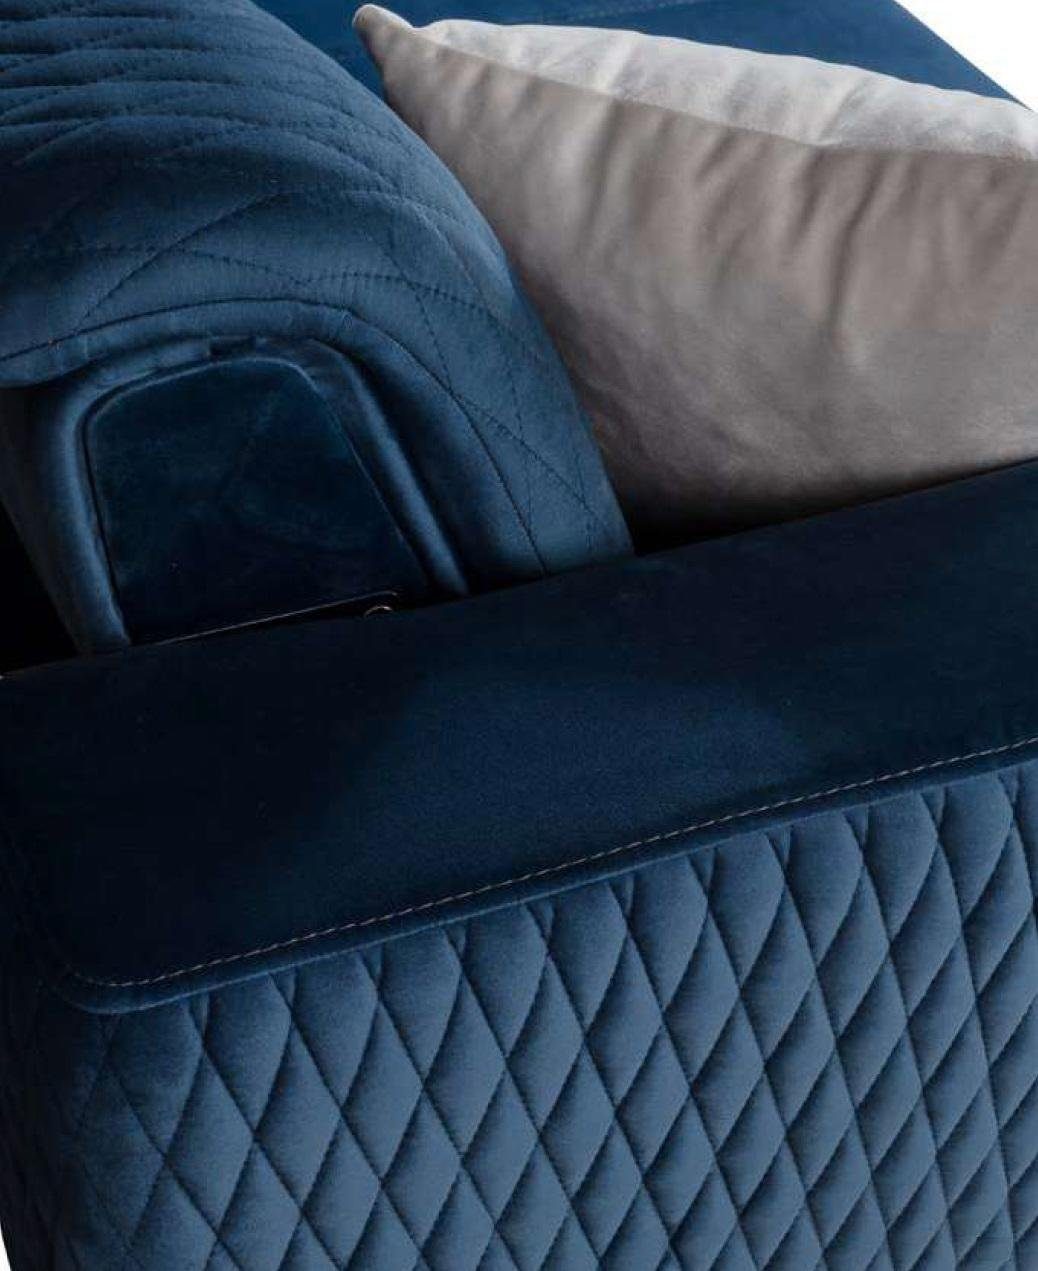 3 Möbel Dreisitzer Sitzer Sofa JVmoebel Blau Lounge Neu Textil Design Couchen